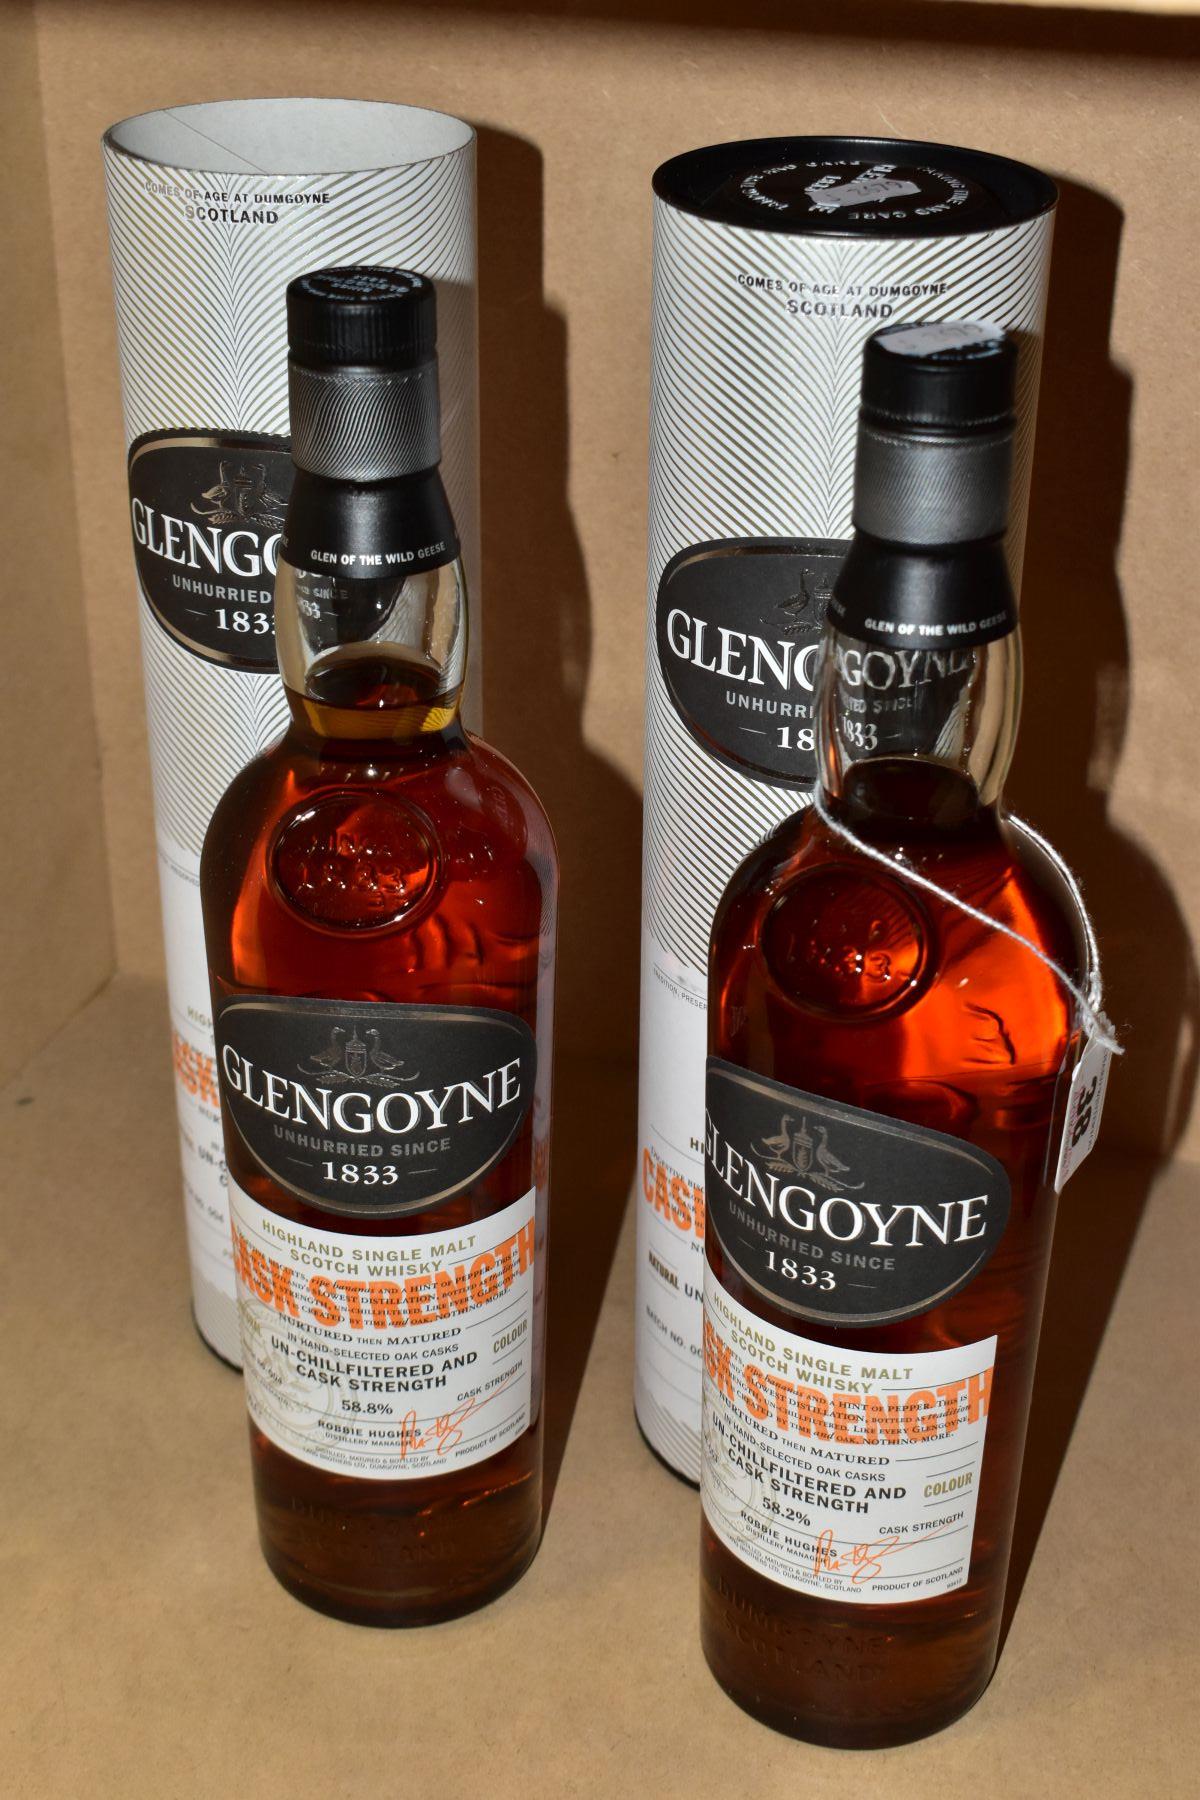 SINGLE MALT, two bottles of Glengoyne Cask Strength Single Malt Scotch Whisky, batch 003, 58.2% vol. - Image 2 of 3